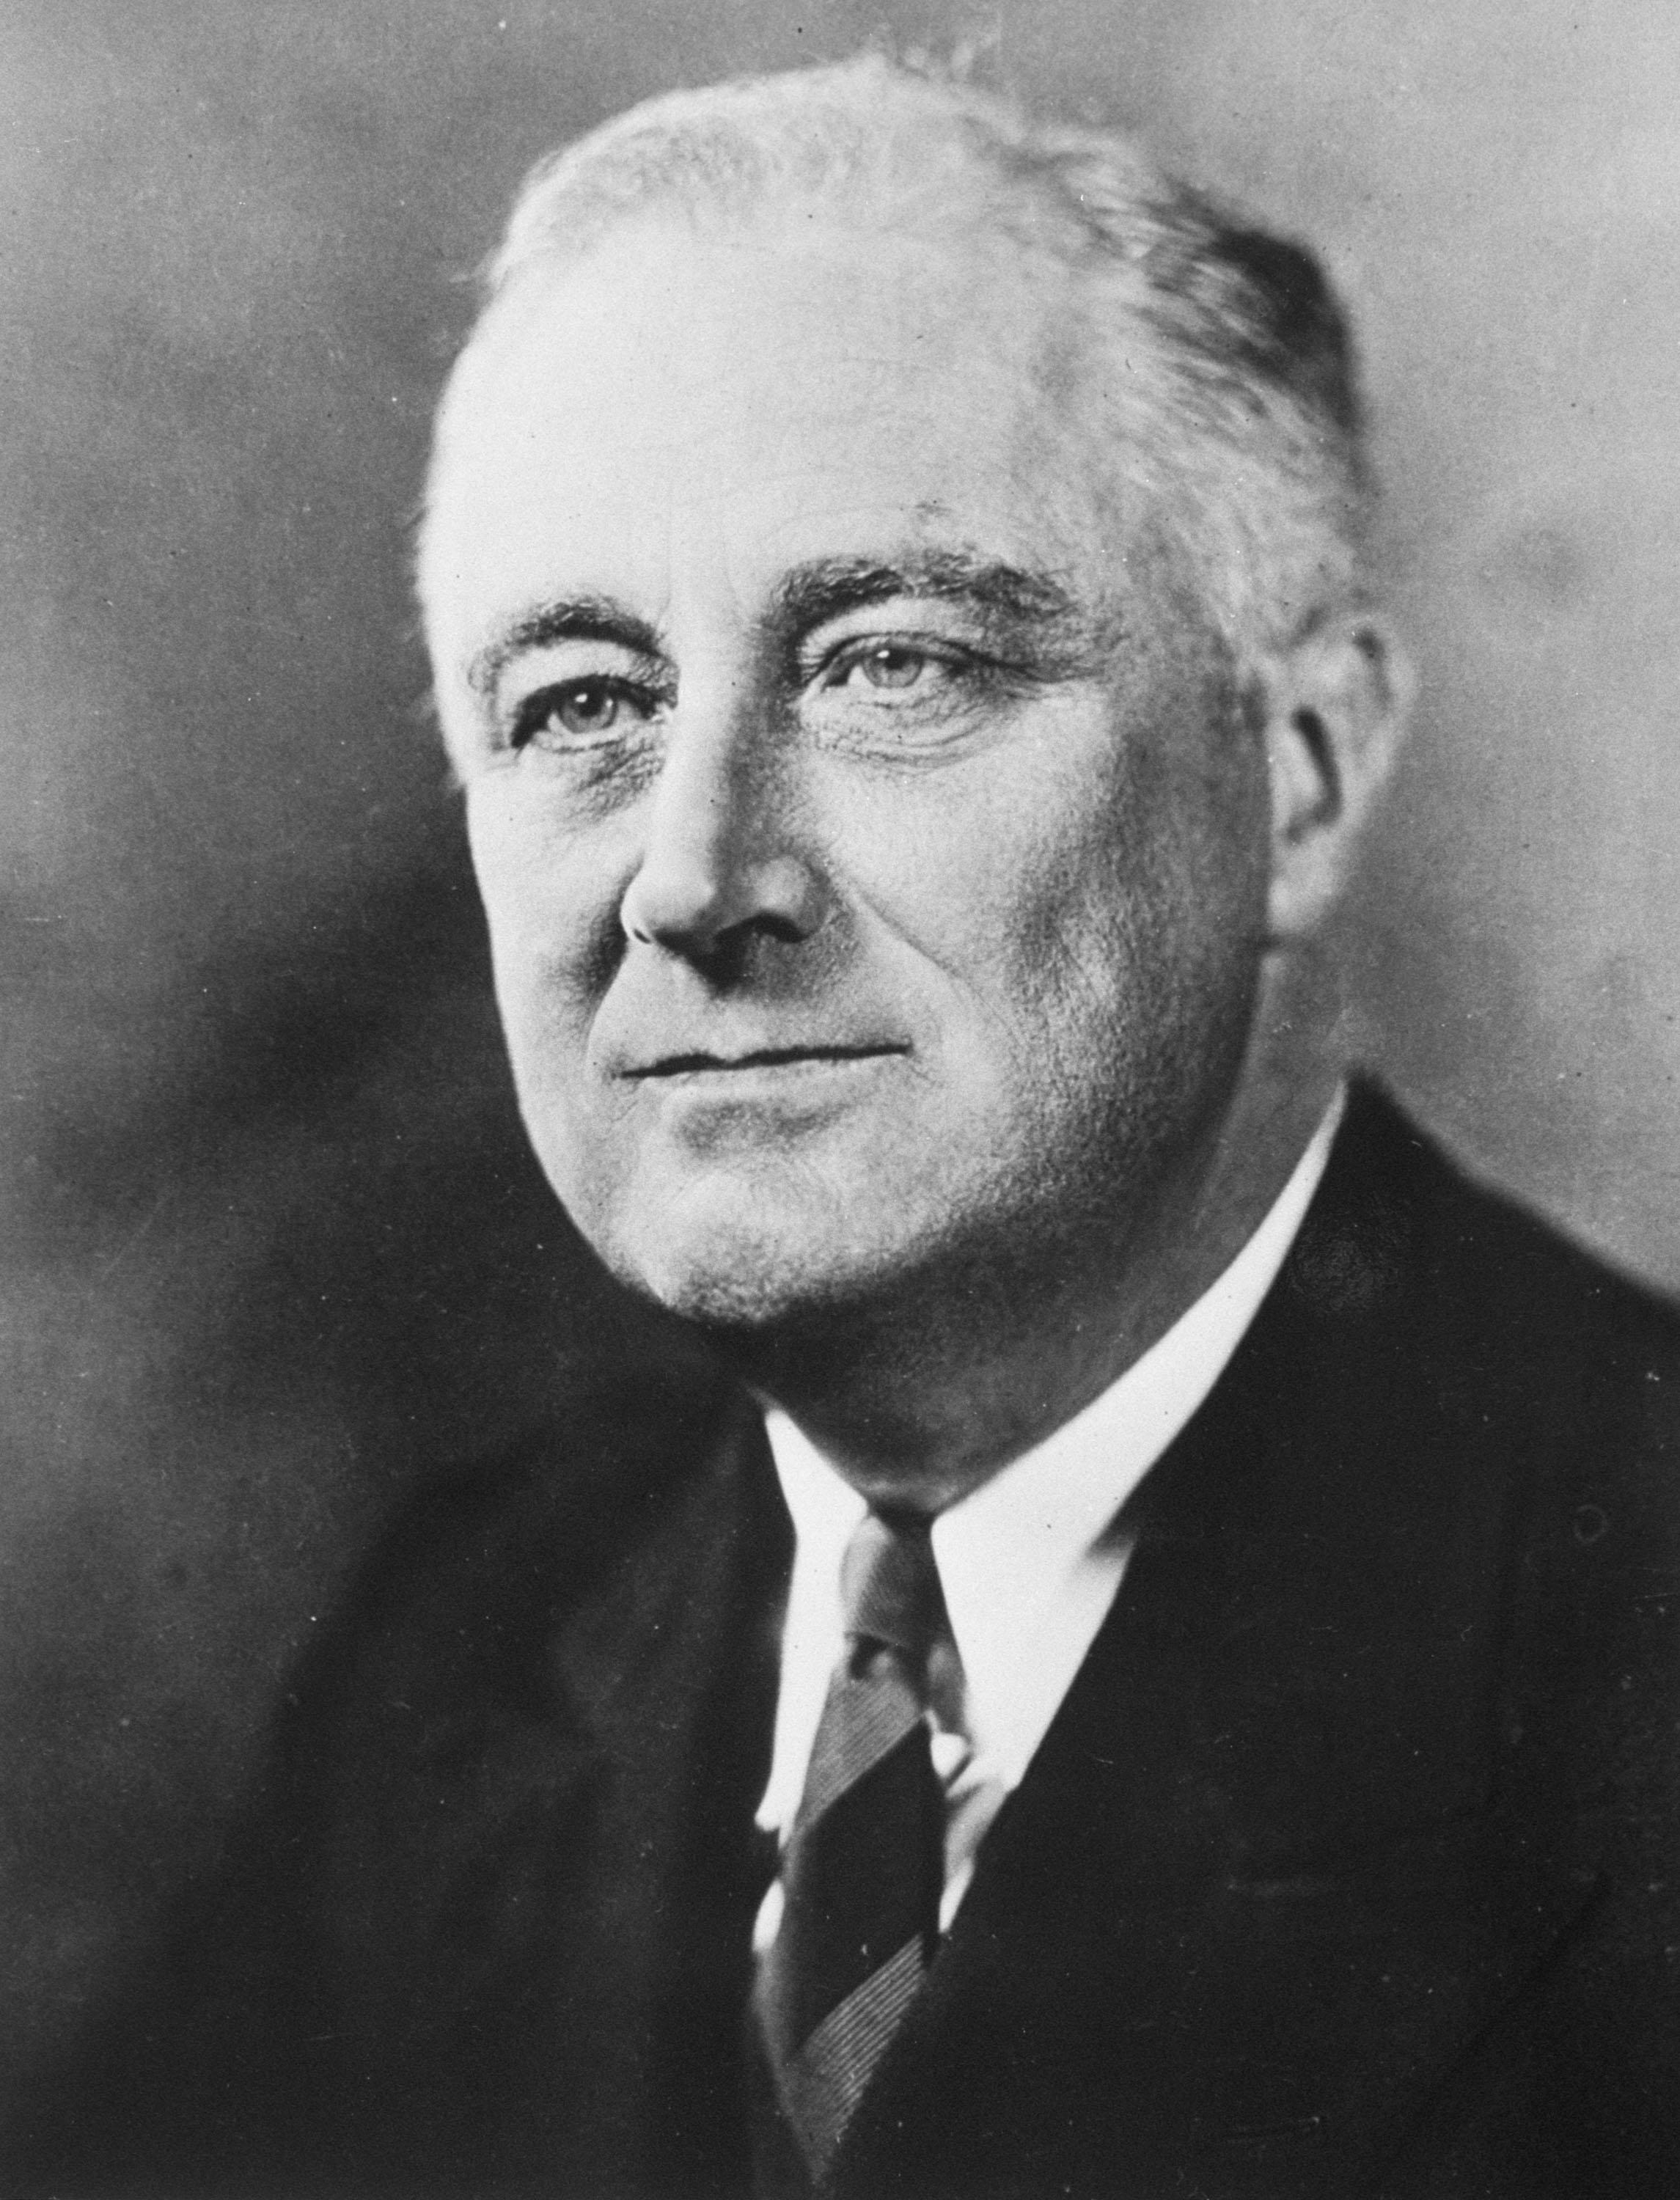 803457 Le discours de Franklin D. Roosevelt du 31 octobre 1936